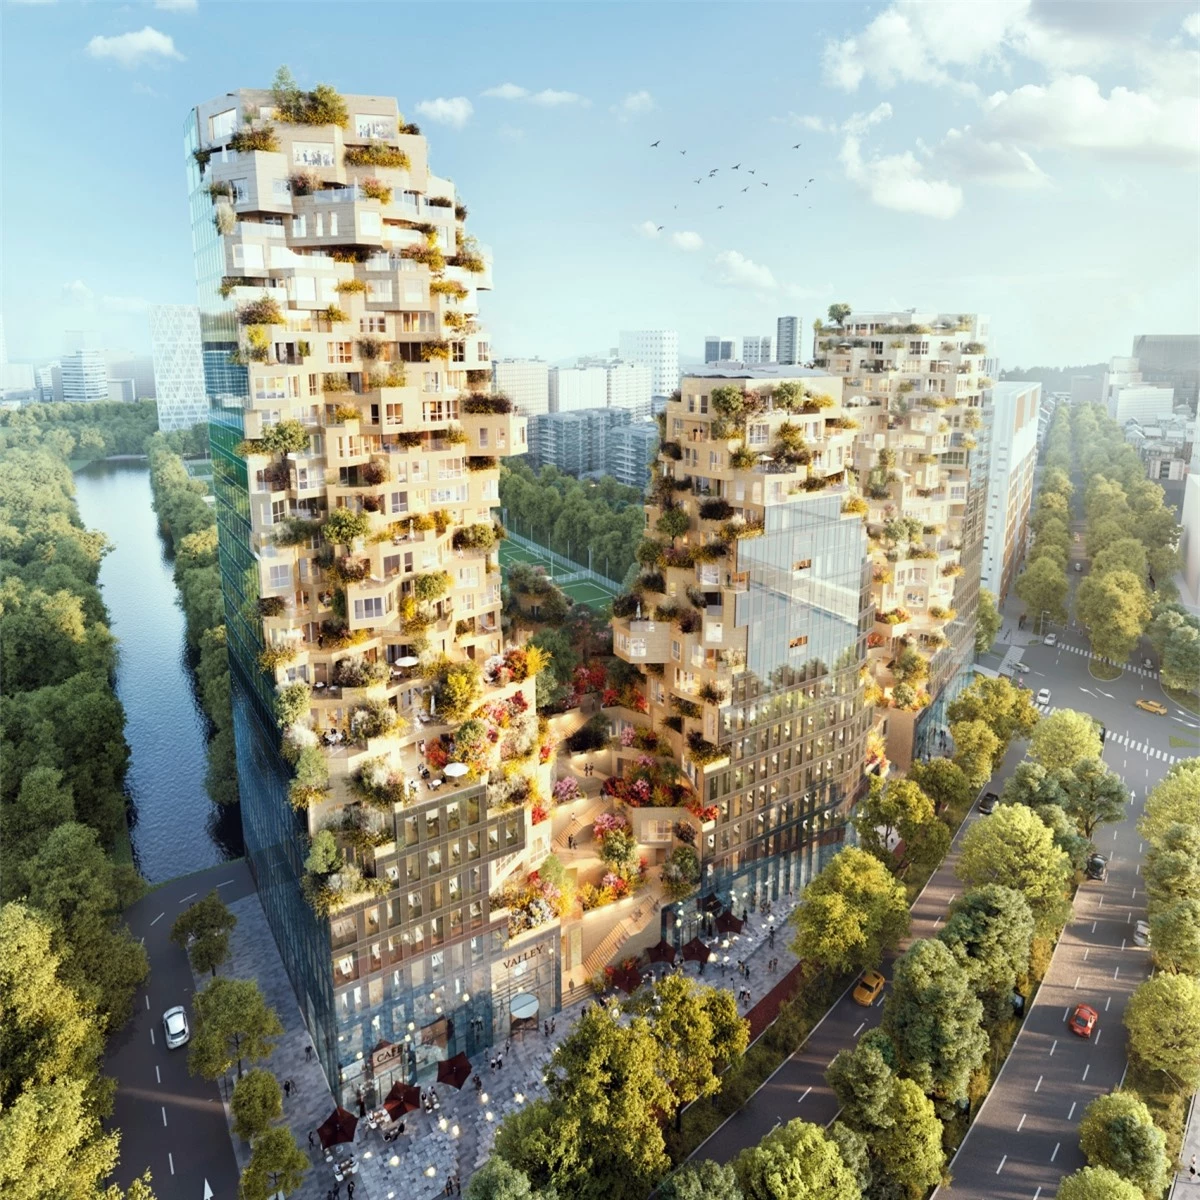 MVRDV lần đầu tiên công bố thiết kế tòa nhà cao tầng hỗn hợp ở Rotterdam vào năm 2015 và cuối cùng nó sẽ đi vào hoạt động năm 2021. Được đặt tên là Thung lũng, công trình bao gồm ba đỉnh núi, mỗi đỉnh đều có cây xanh và cửa sổ góc nhô ra từ mọi góc độ./.